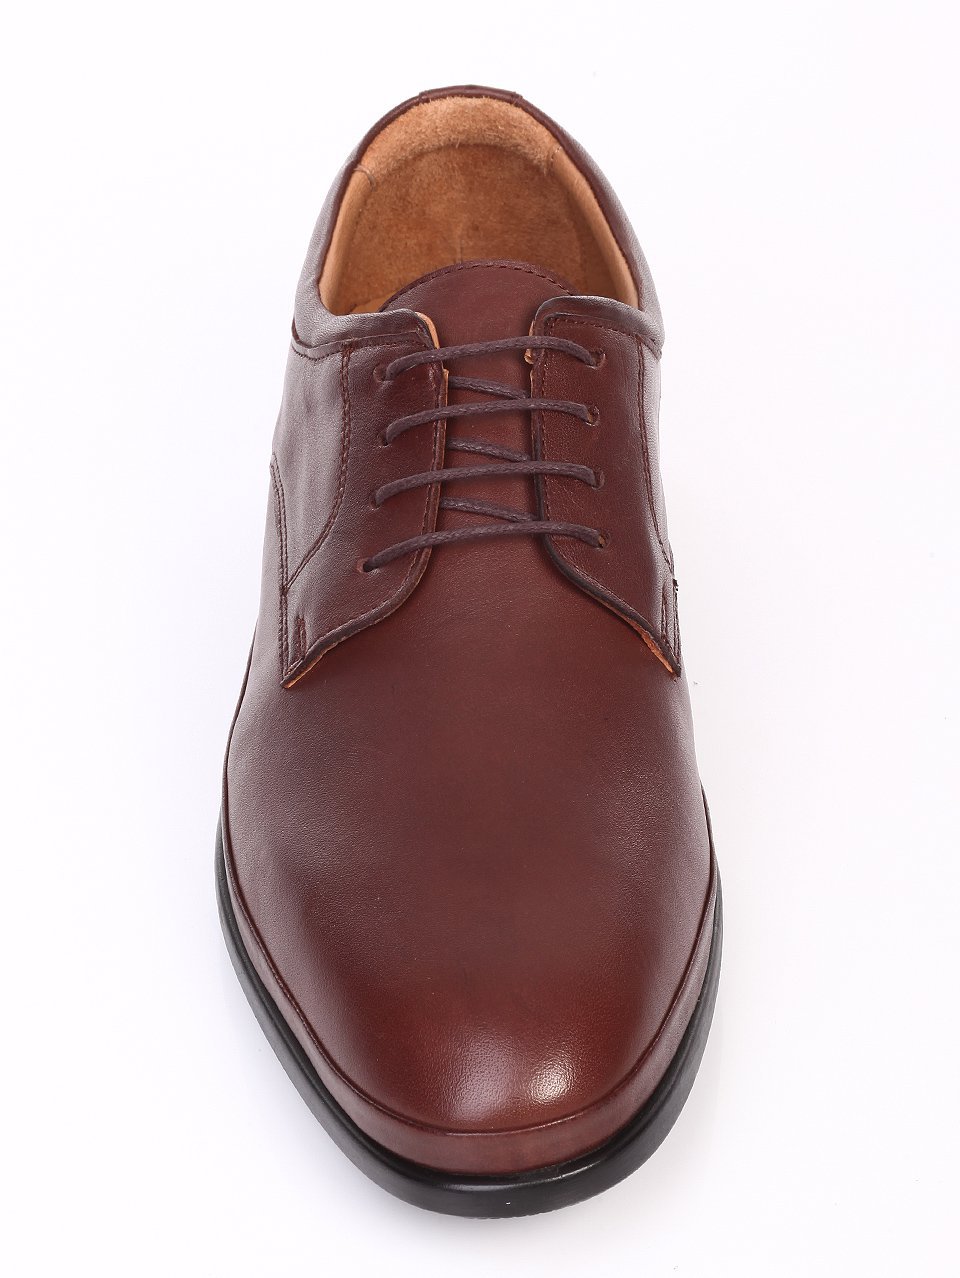 Елегантни мъжки обувки от естествена кожа 7AT-16875 brown